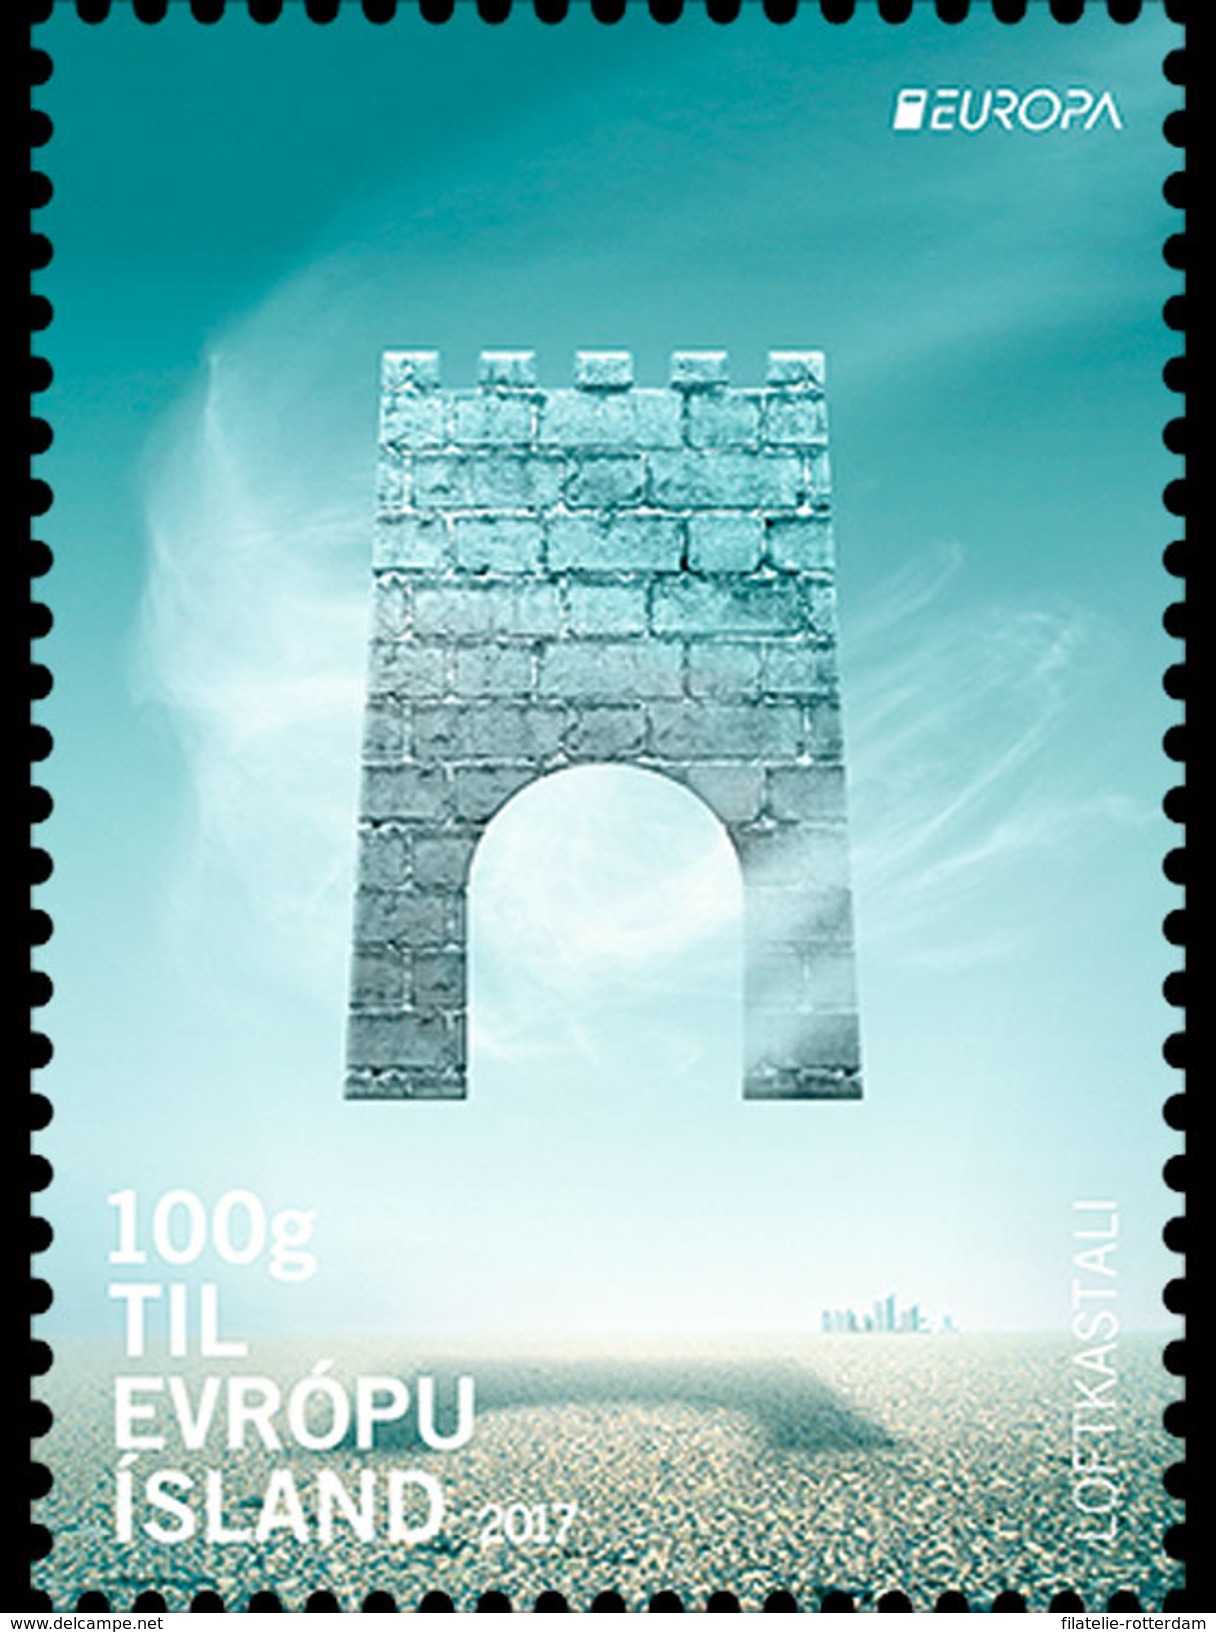 IJsland / Iceland - Postfris / MNH - Complete Set Europa, Kastelen 2017 - Unused Stamps